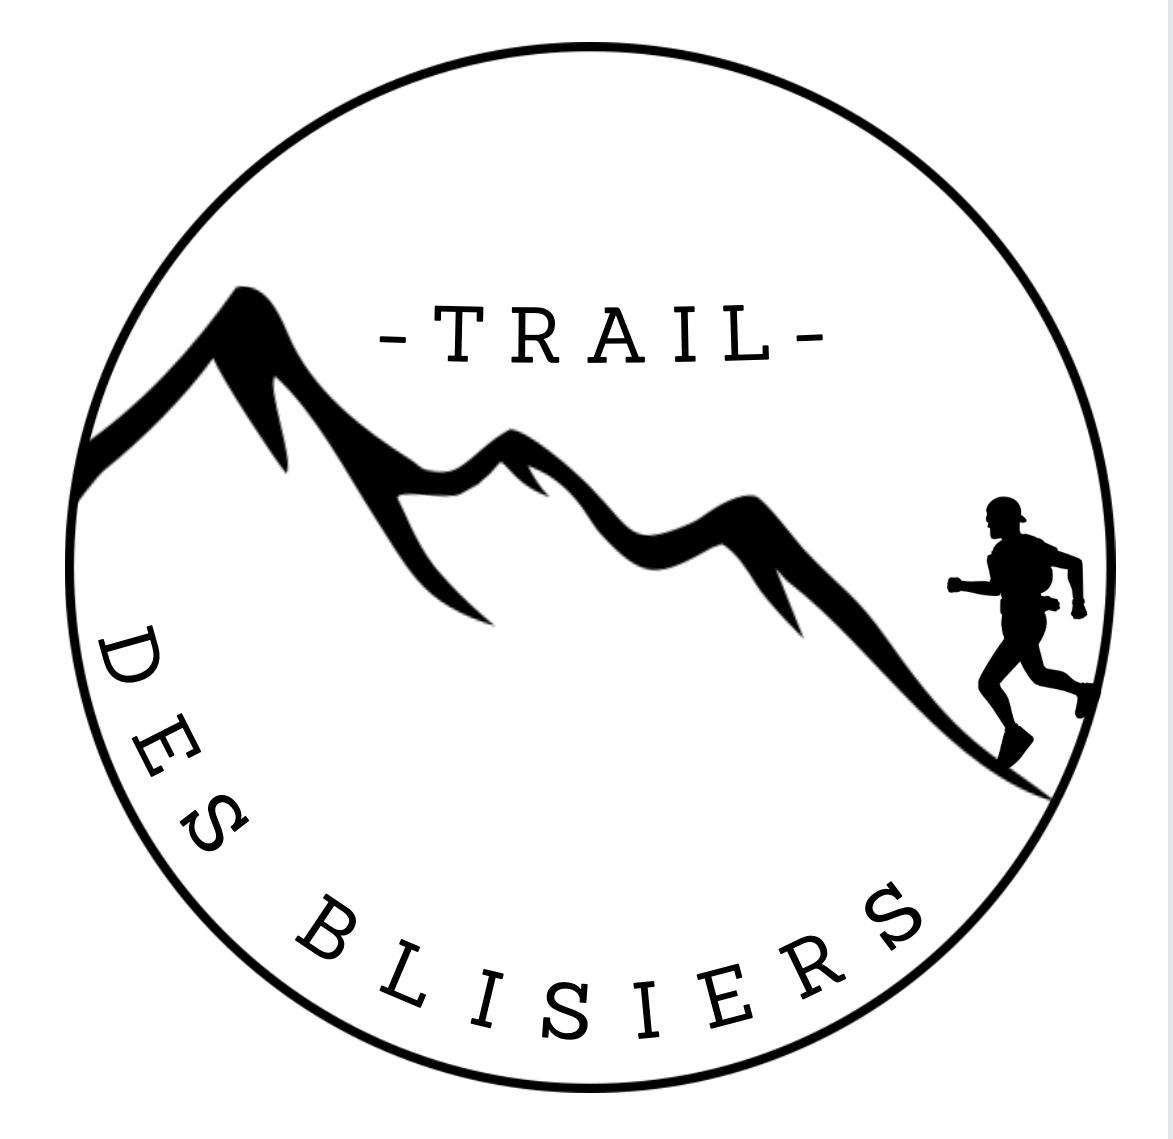 Trail des Blisiers